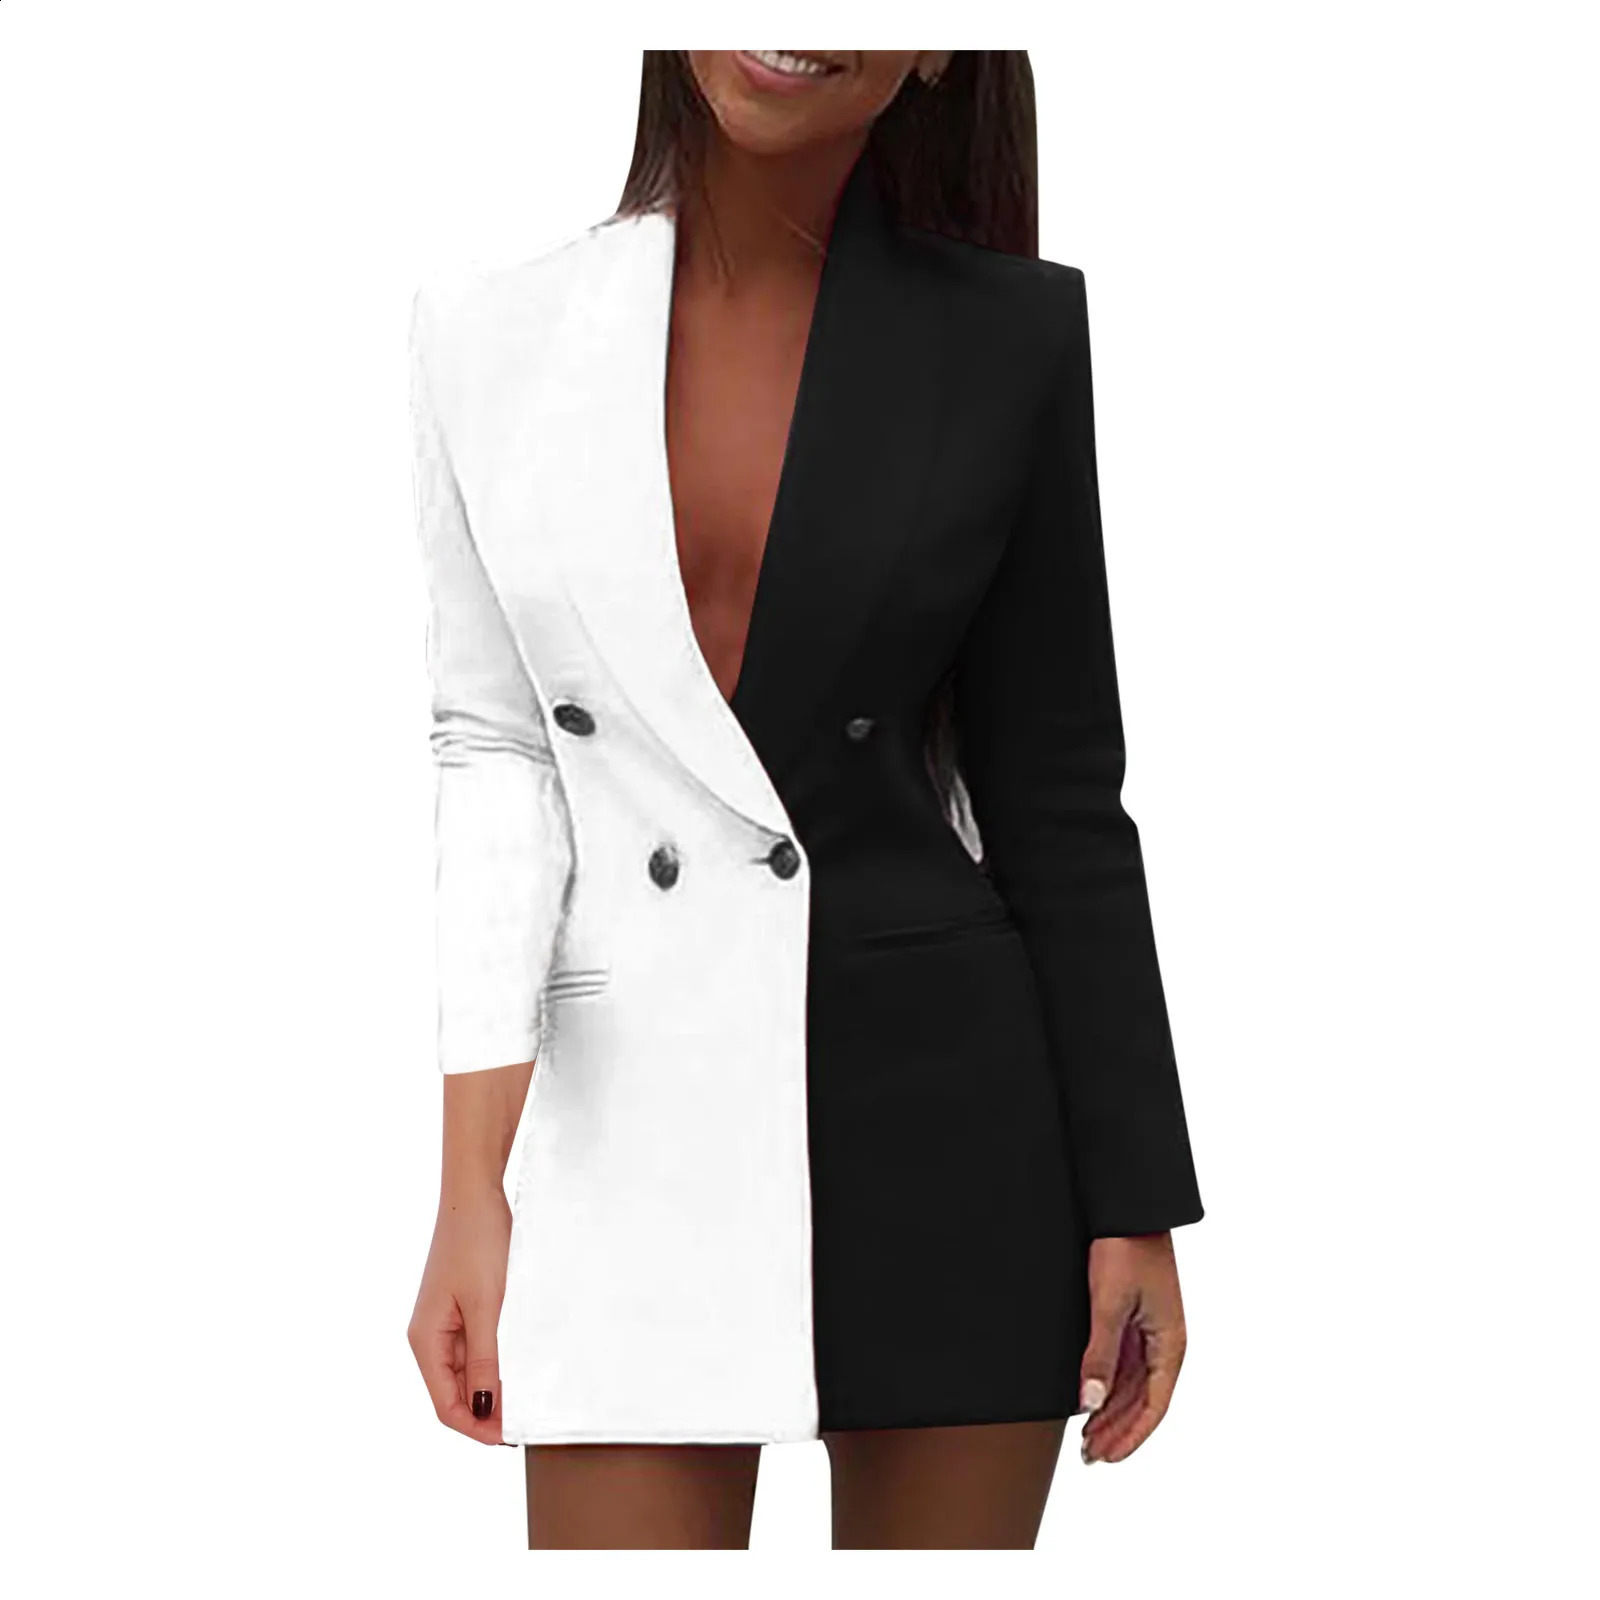 Kobiety Blazer Winter Slim Long Rękaw Elegancki garnitur podwójnie czarny biały płaszcz z płaszczem biurowy płaszcz 240130